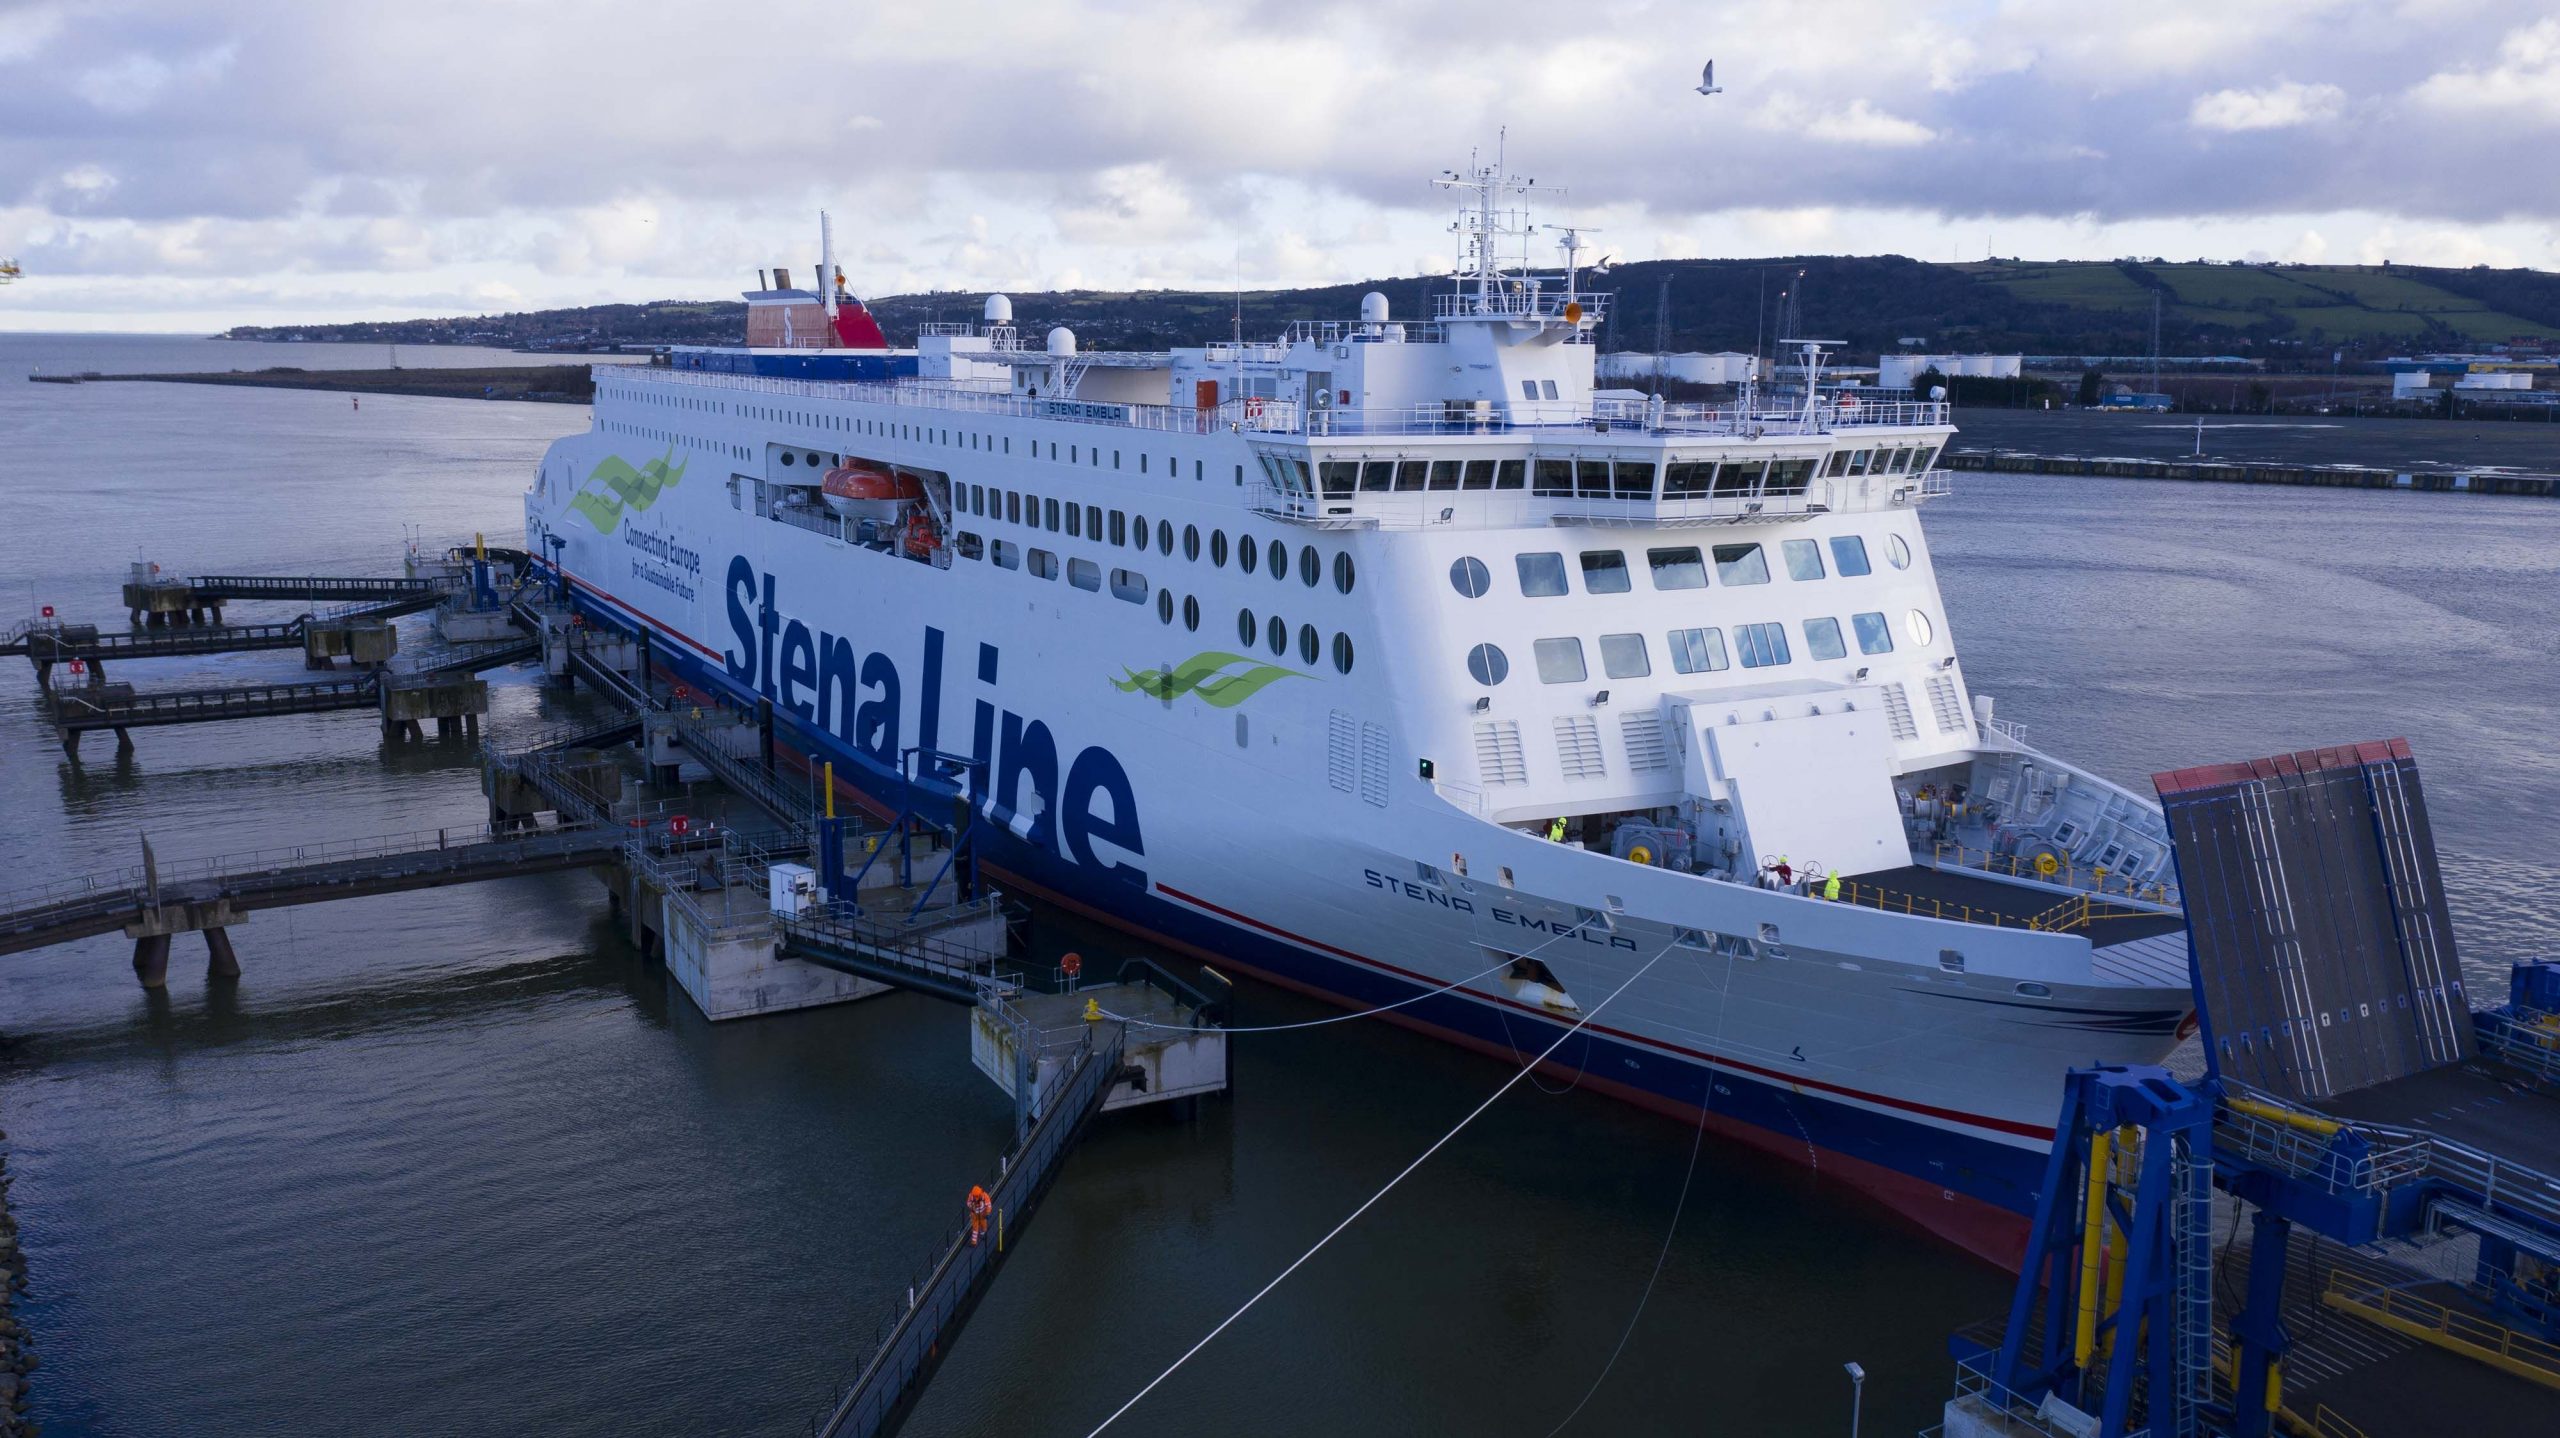 渡輪公司 Stena Line 將在下週末增加愛爾蘭至法國航運班次以應付脫歐後需要